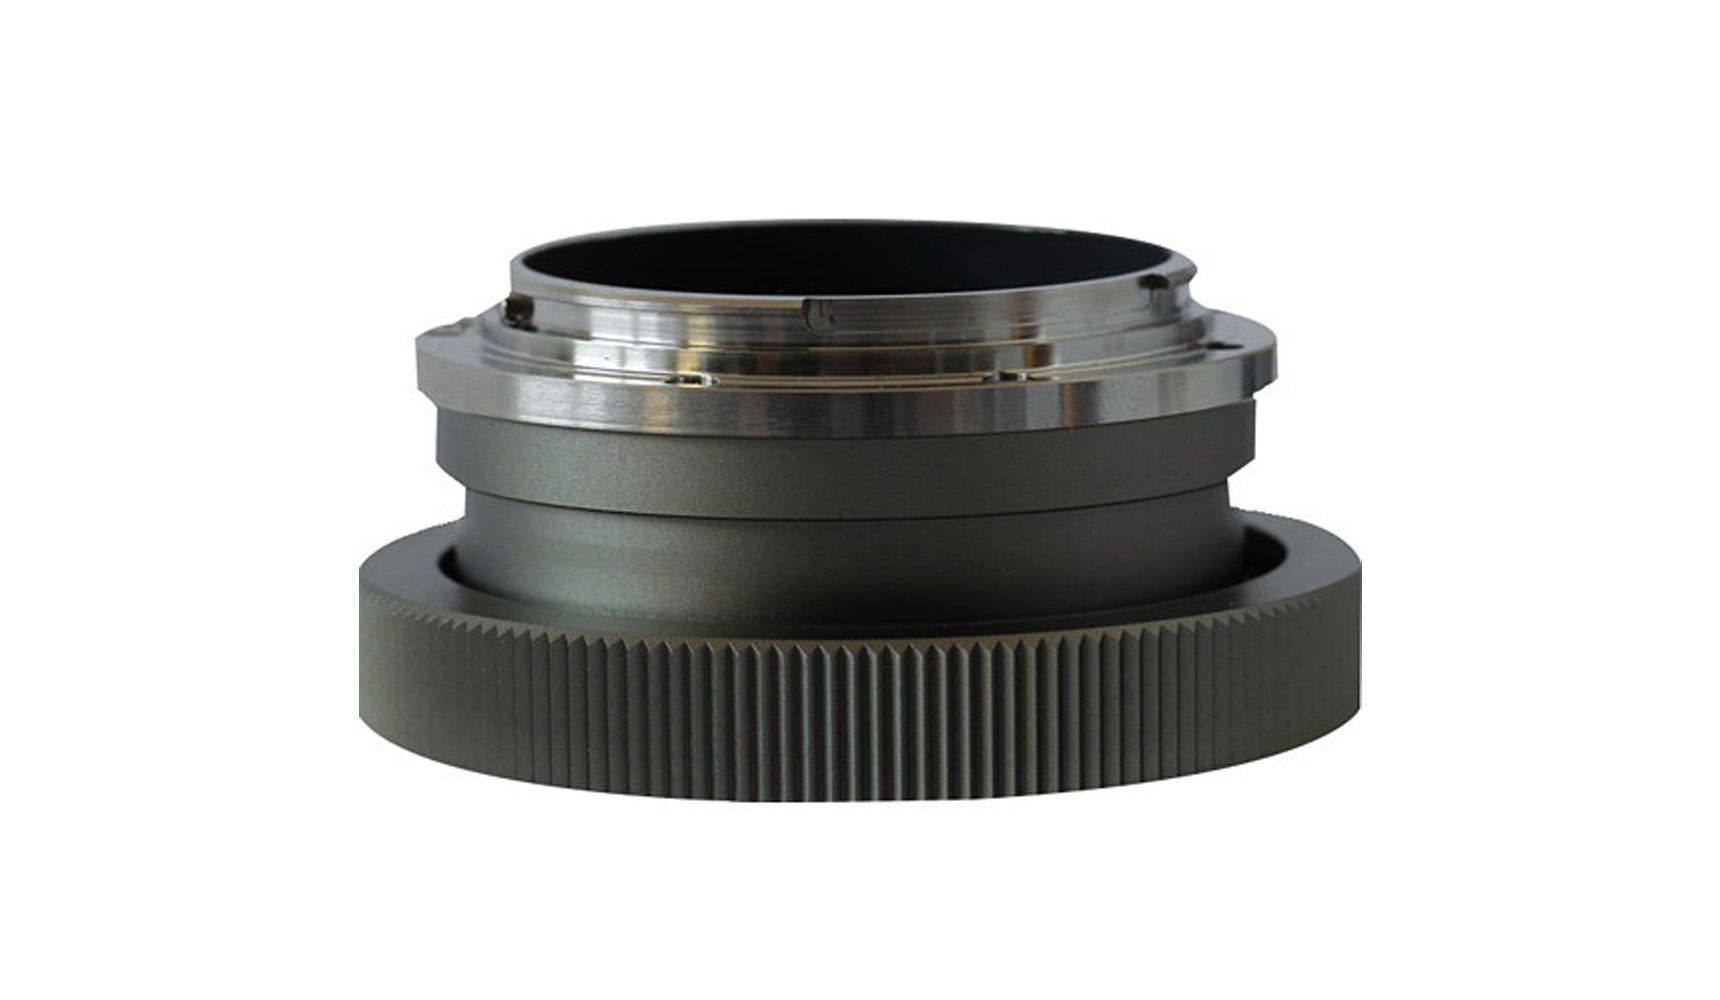 Angénieux - EF Lens Mount (for EZ Zoom Lenses)